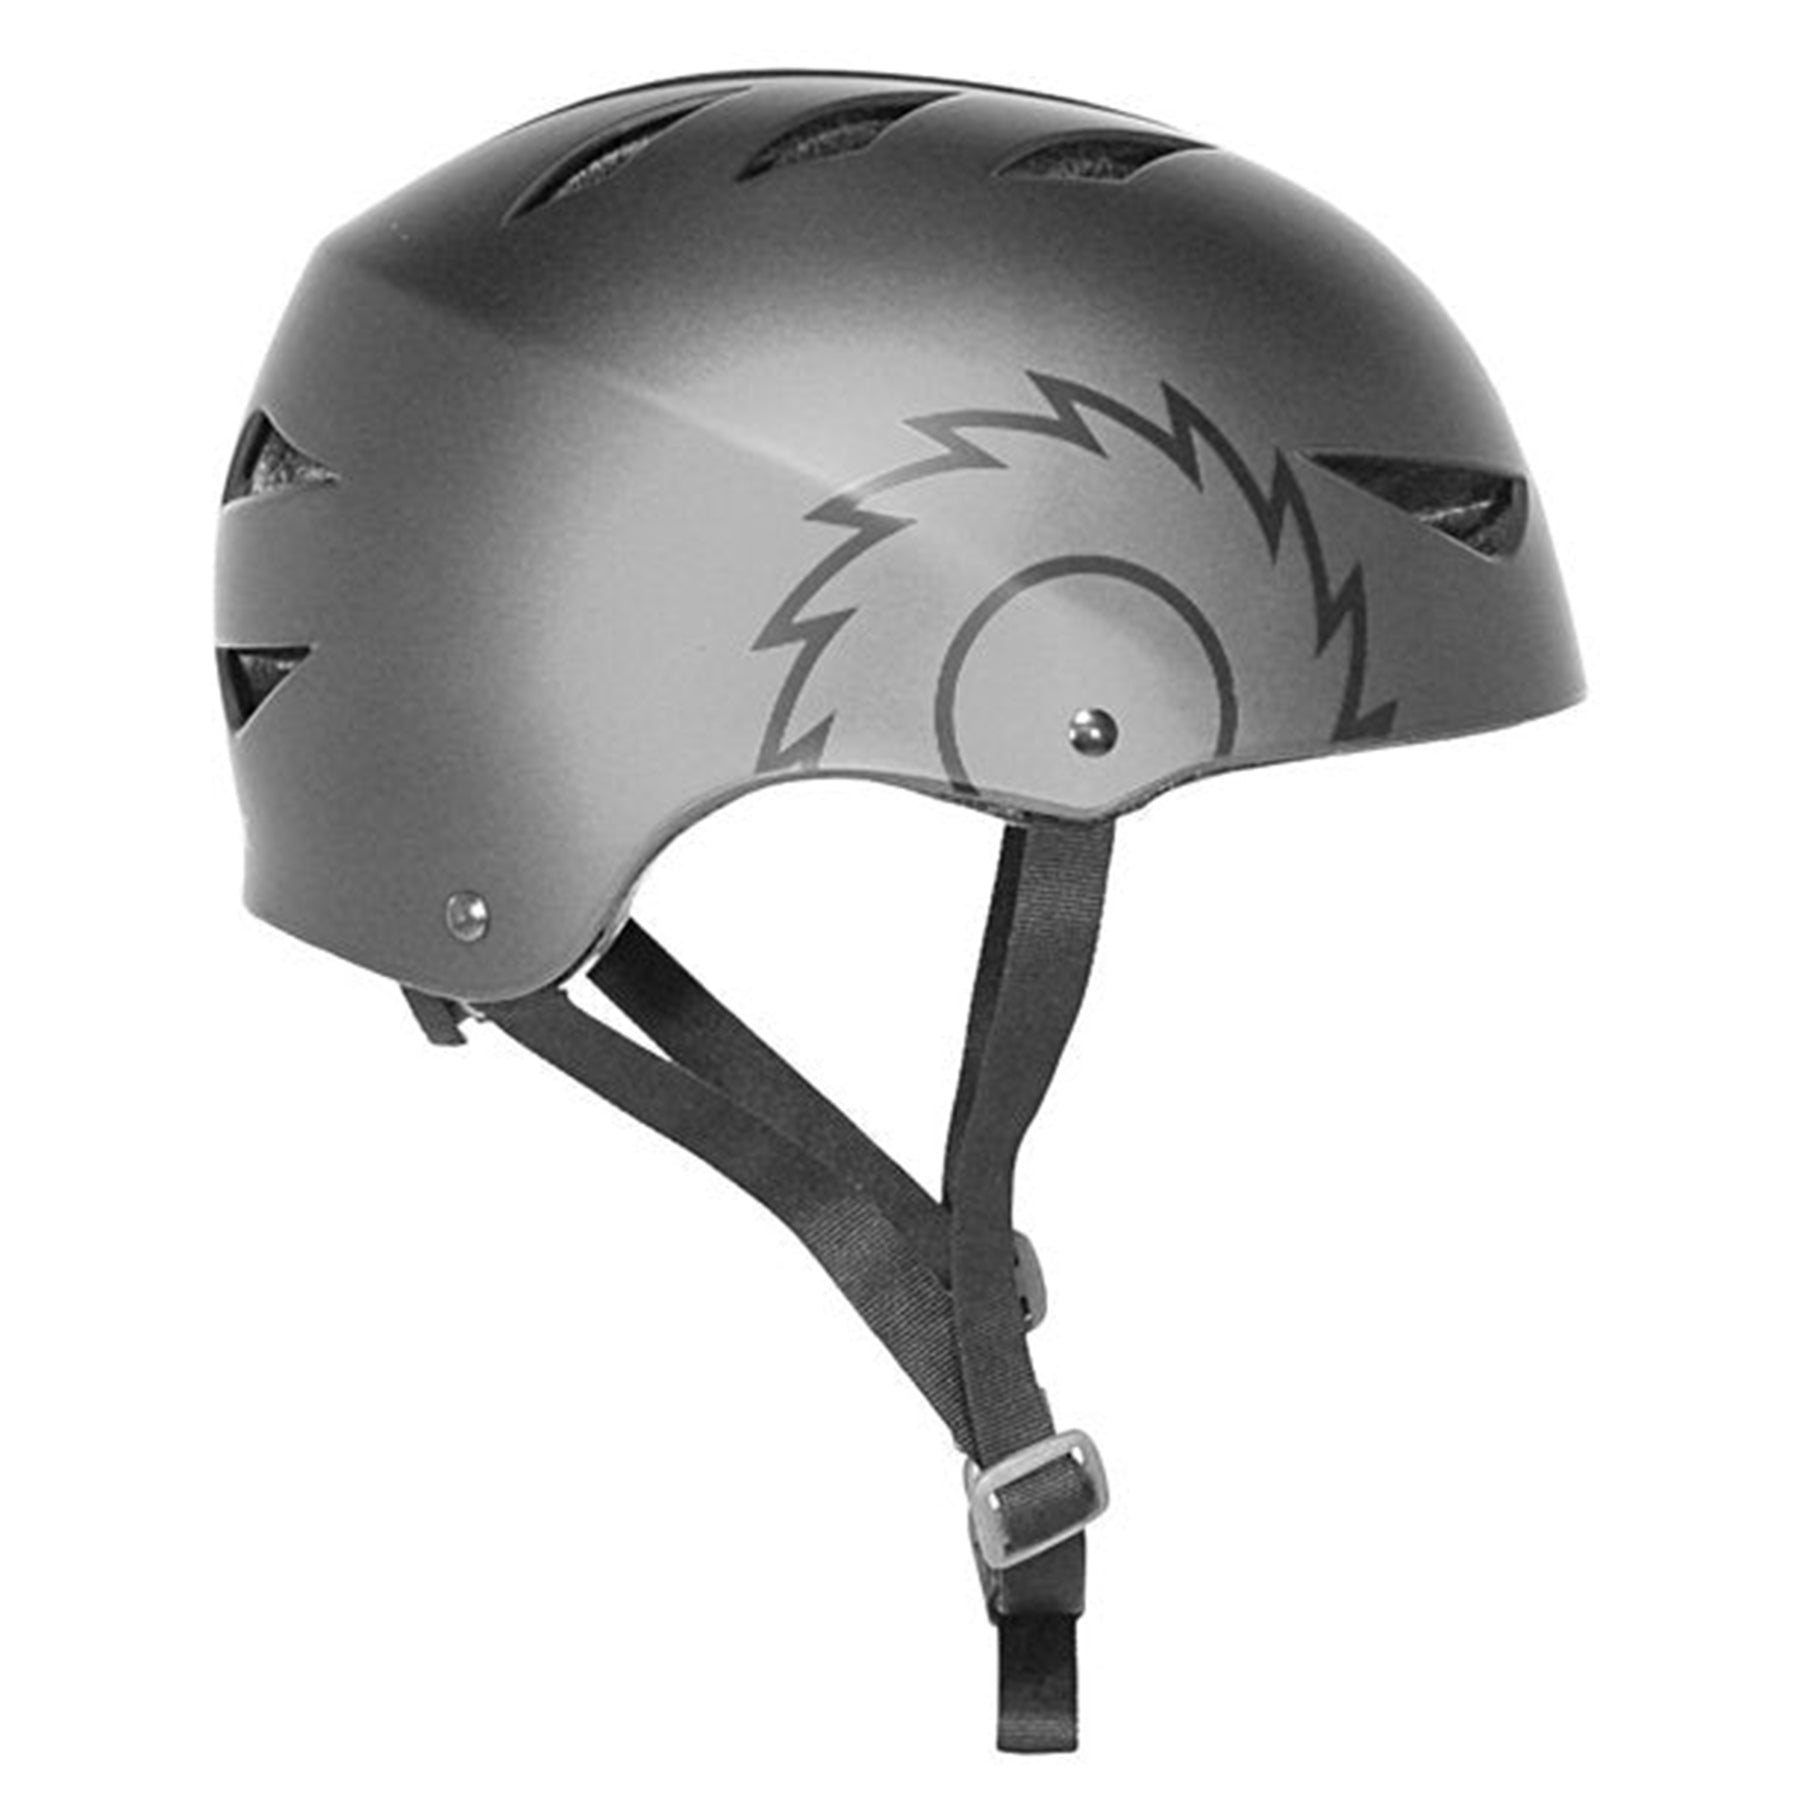 Razor® Youth Multi-Sport Helmet | Helmet for Kids Ages 8+